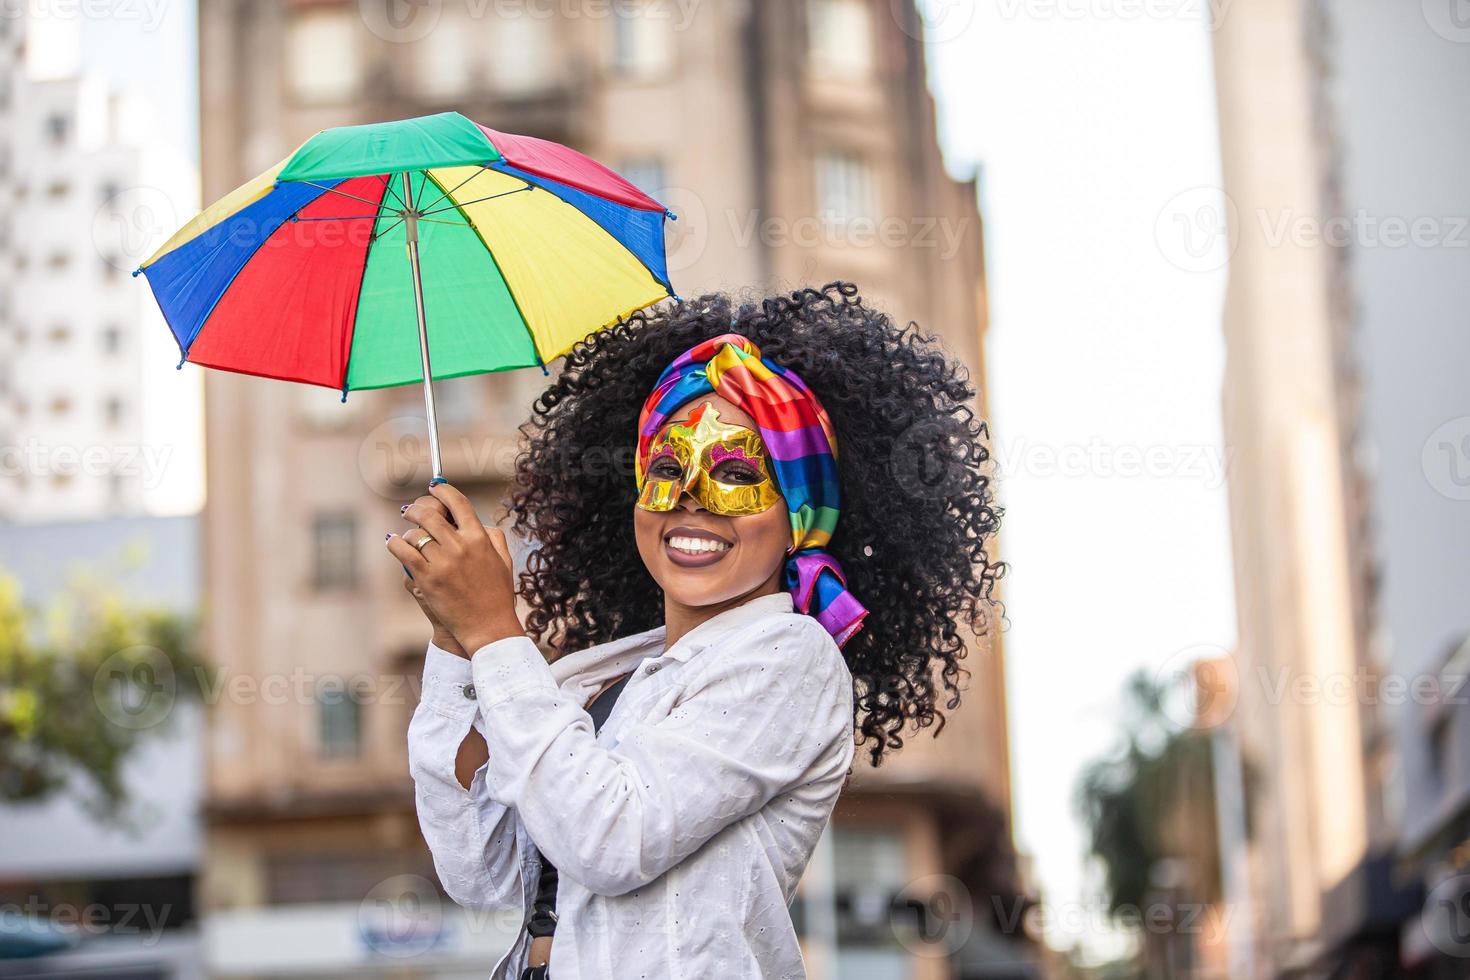 mujer joven de pelo rizado celebrando la fiesta del carnaval brasileño con paraguas frevo en la calle. foto